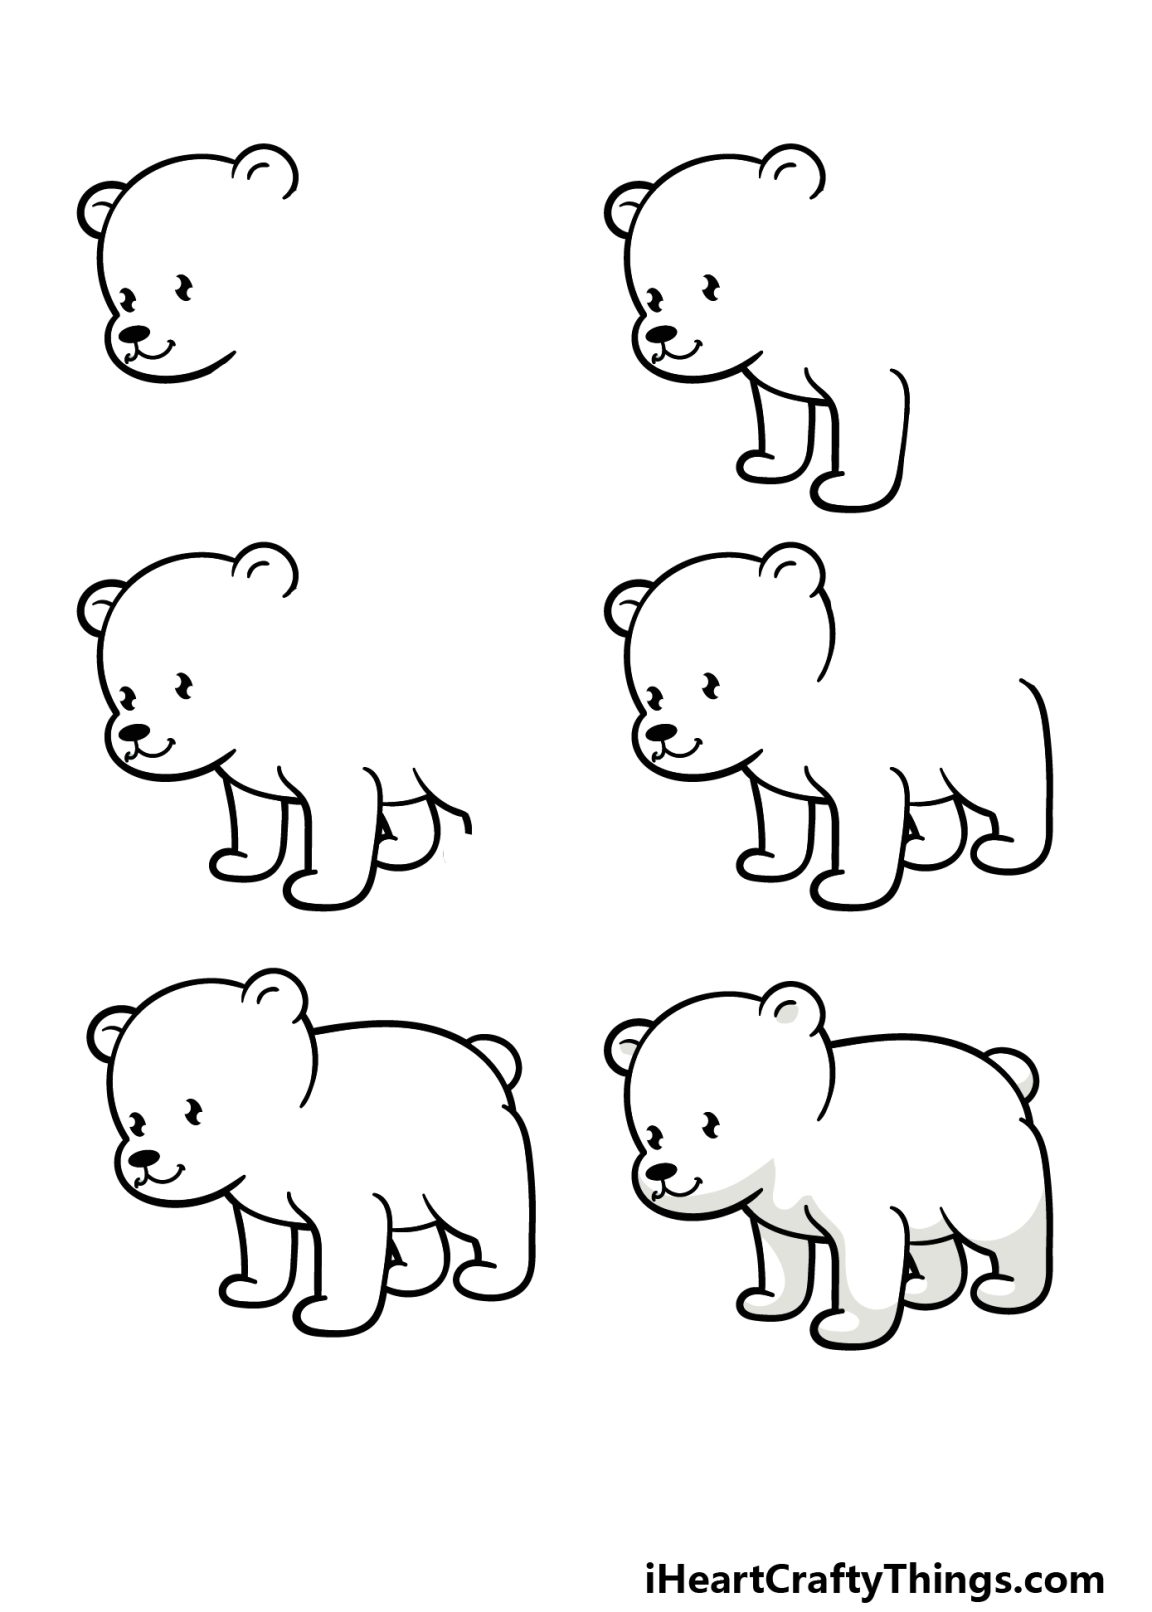 Cartoon Polar Bear Drawing How To Draw A Cartoon Polar Bear Step By Step